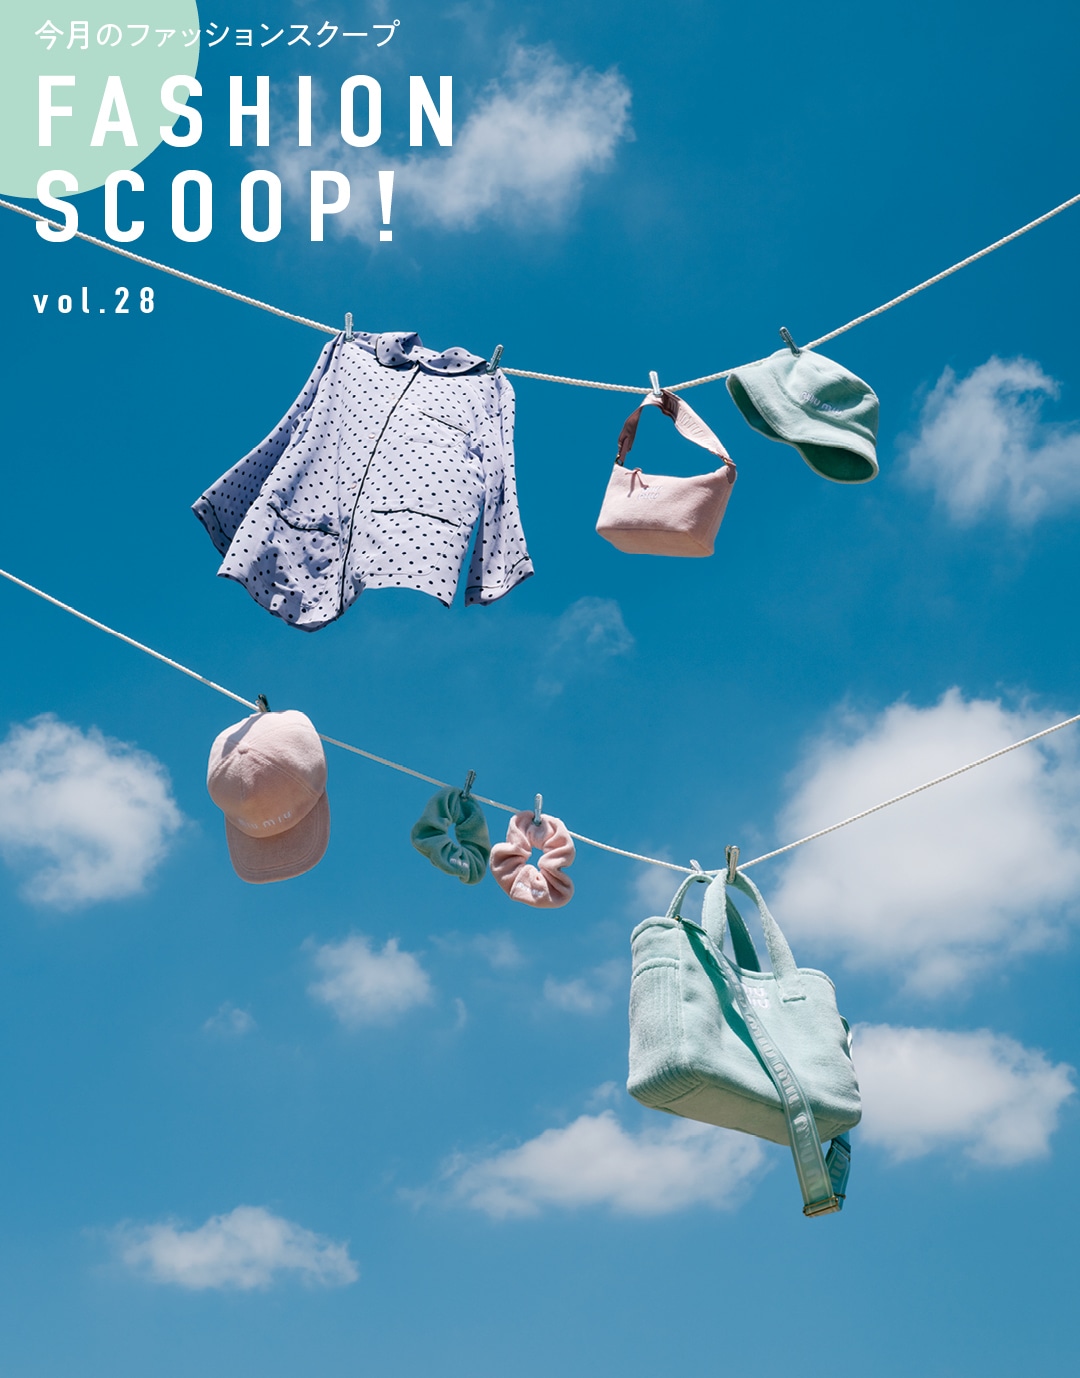 今月のファッションスクープ FASHION SCOOP! vol.28